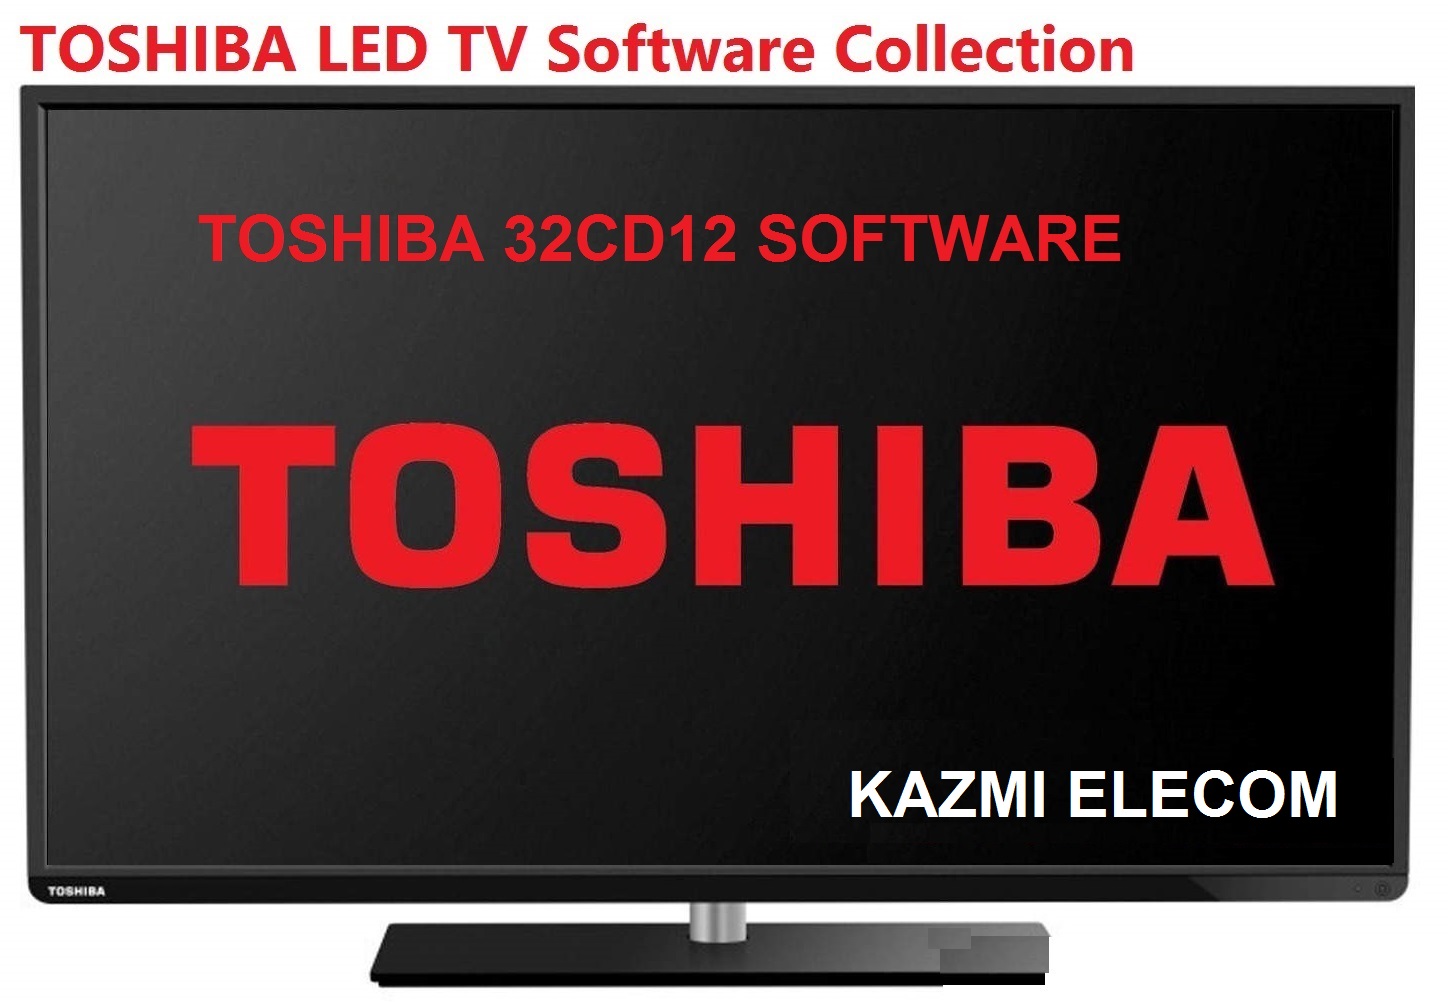 Toshiba 32Cd12